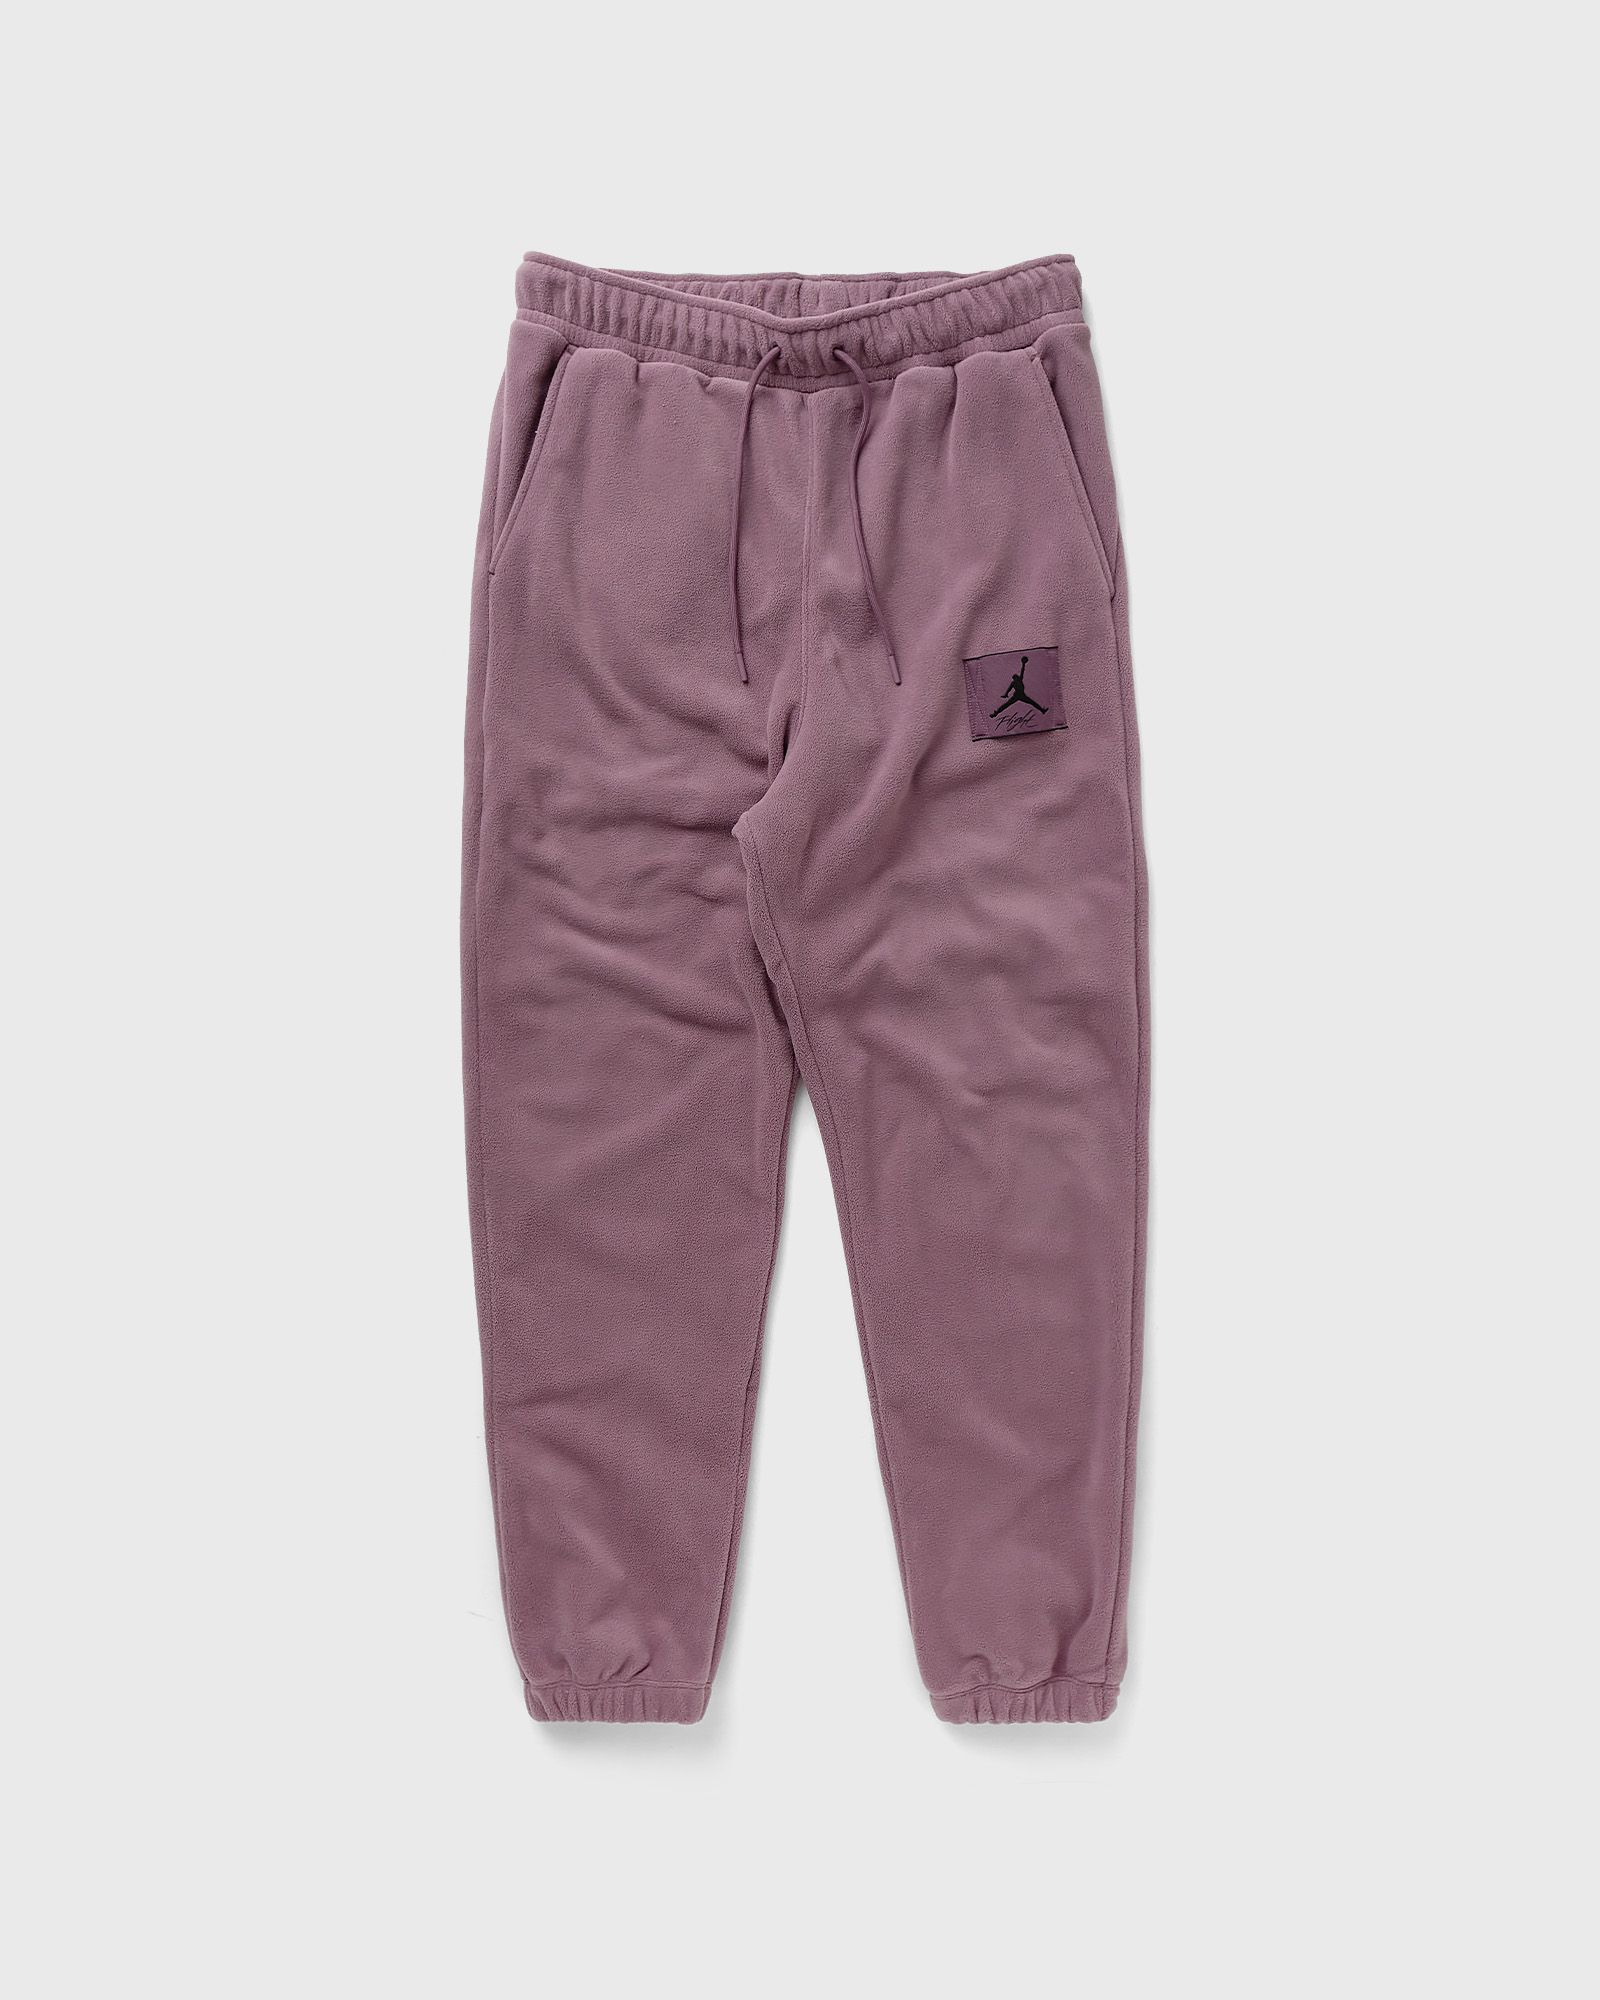 Jordan - essentials men's fleece winter pants men sweatpants purple in größe:s